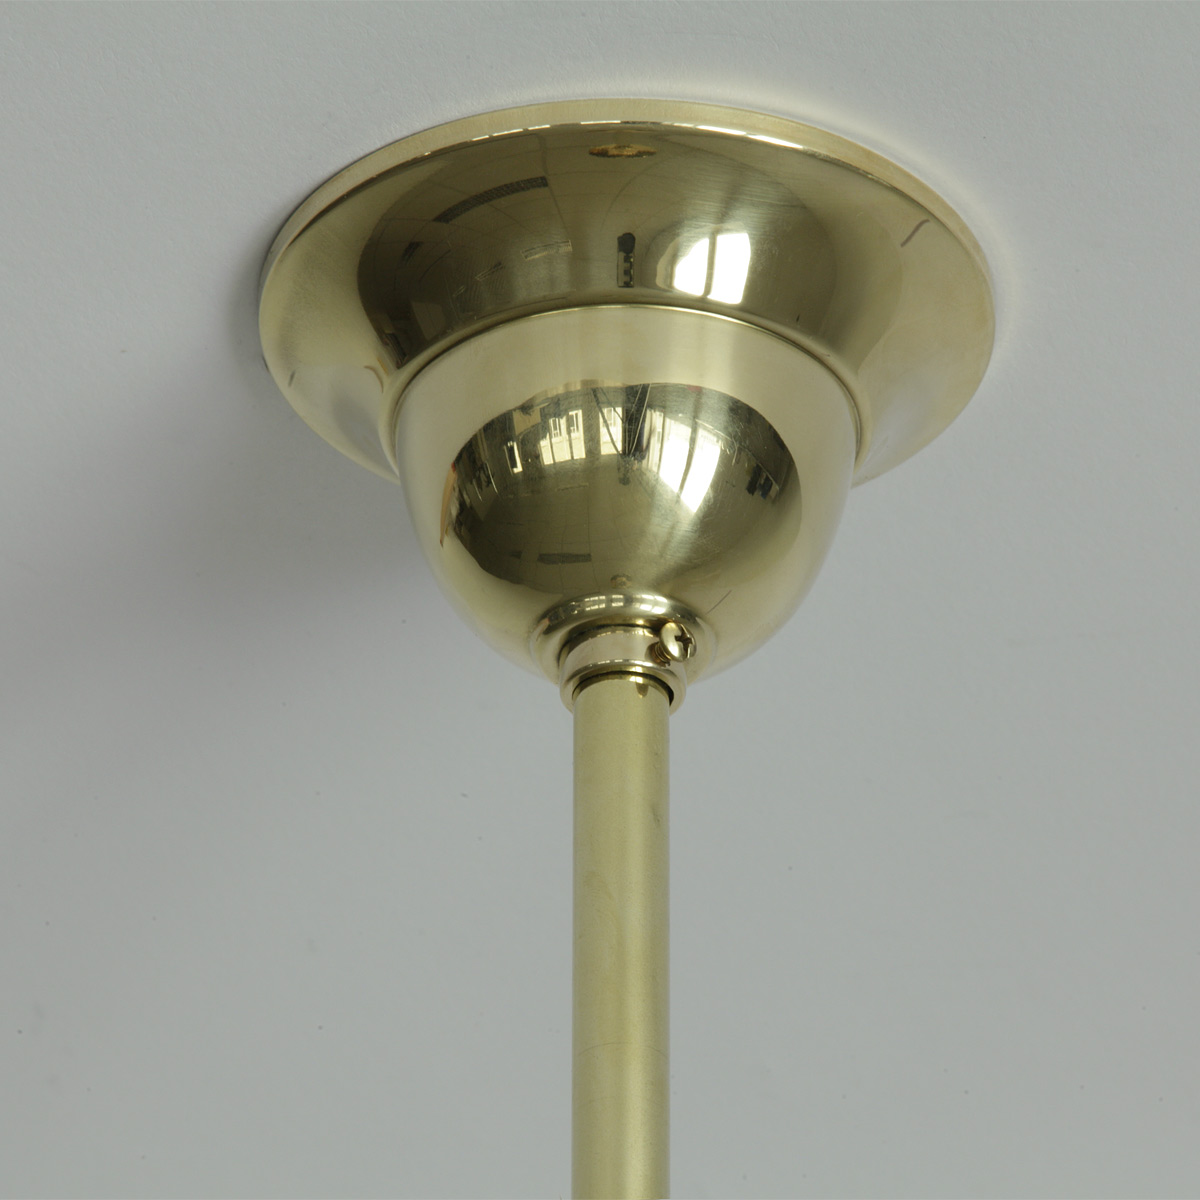 Kugelglas-Hängeleuchte an Pendelrohr (Ø 30 cm, Messing poliert): Deckenbaldachin mit Pendelrohr, hier in Messing glanzpoliert